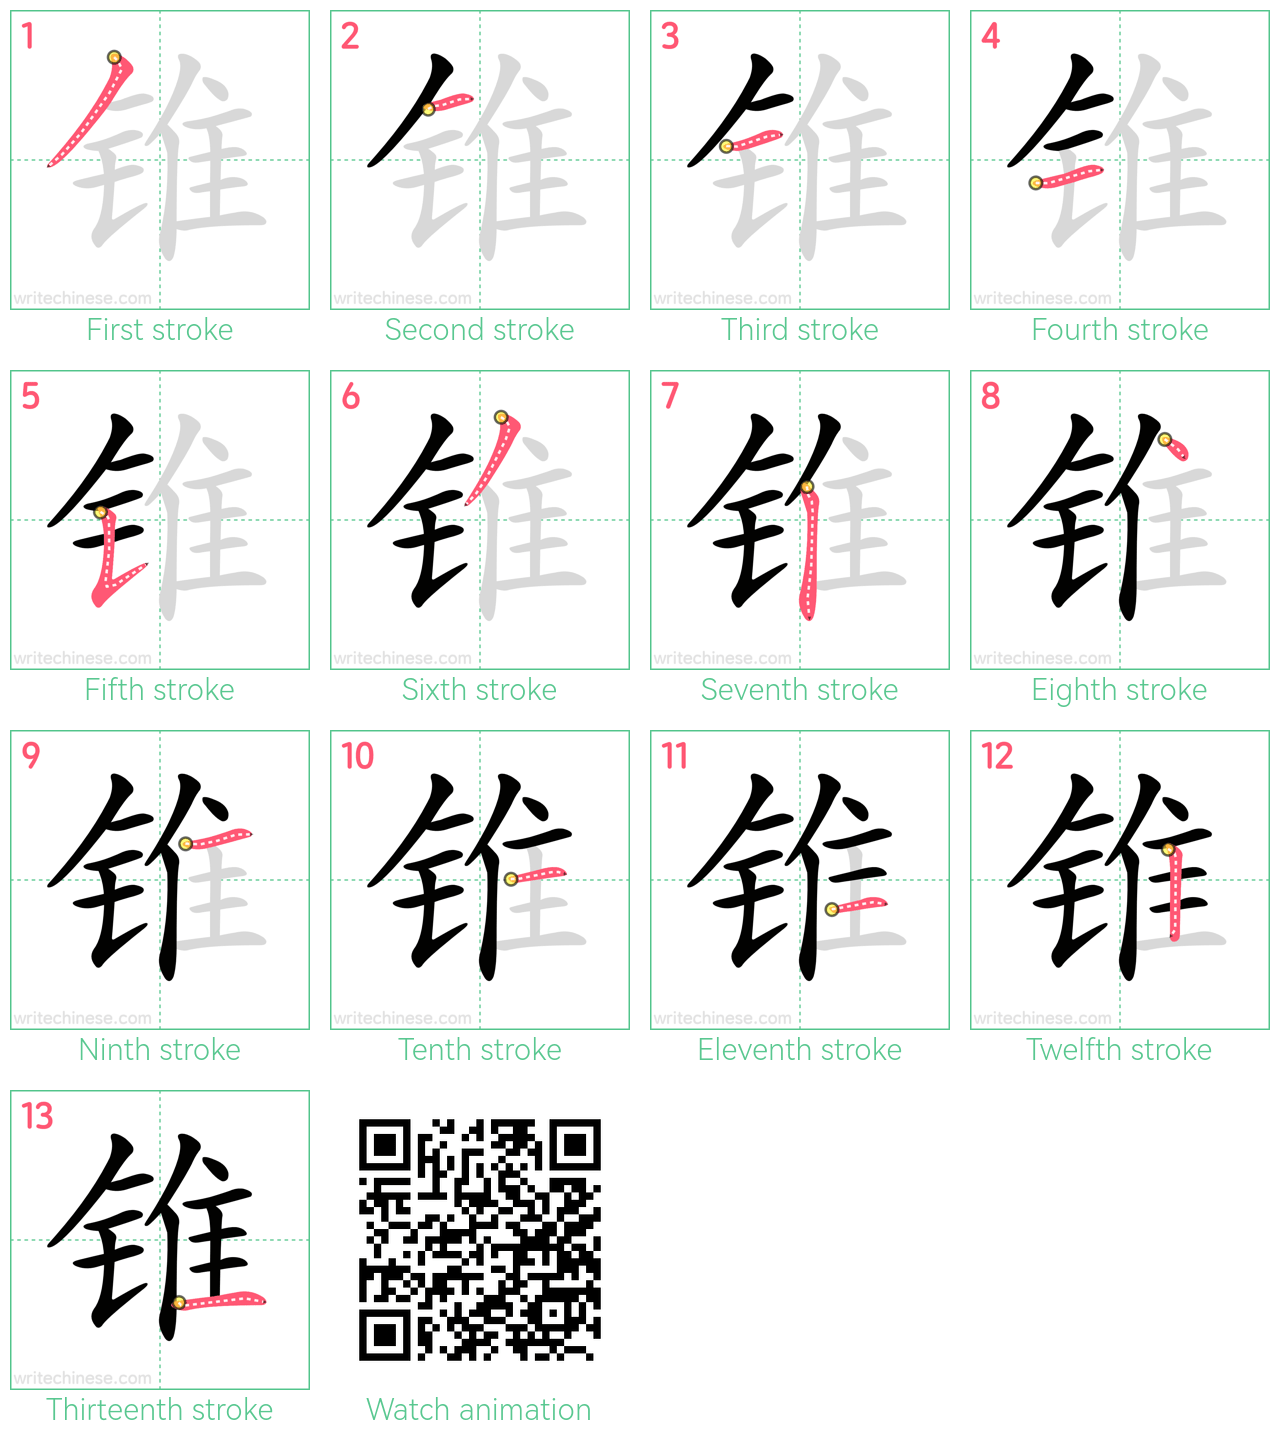 锥 step-by-step stroke order diagrams